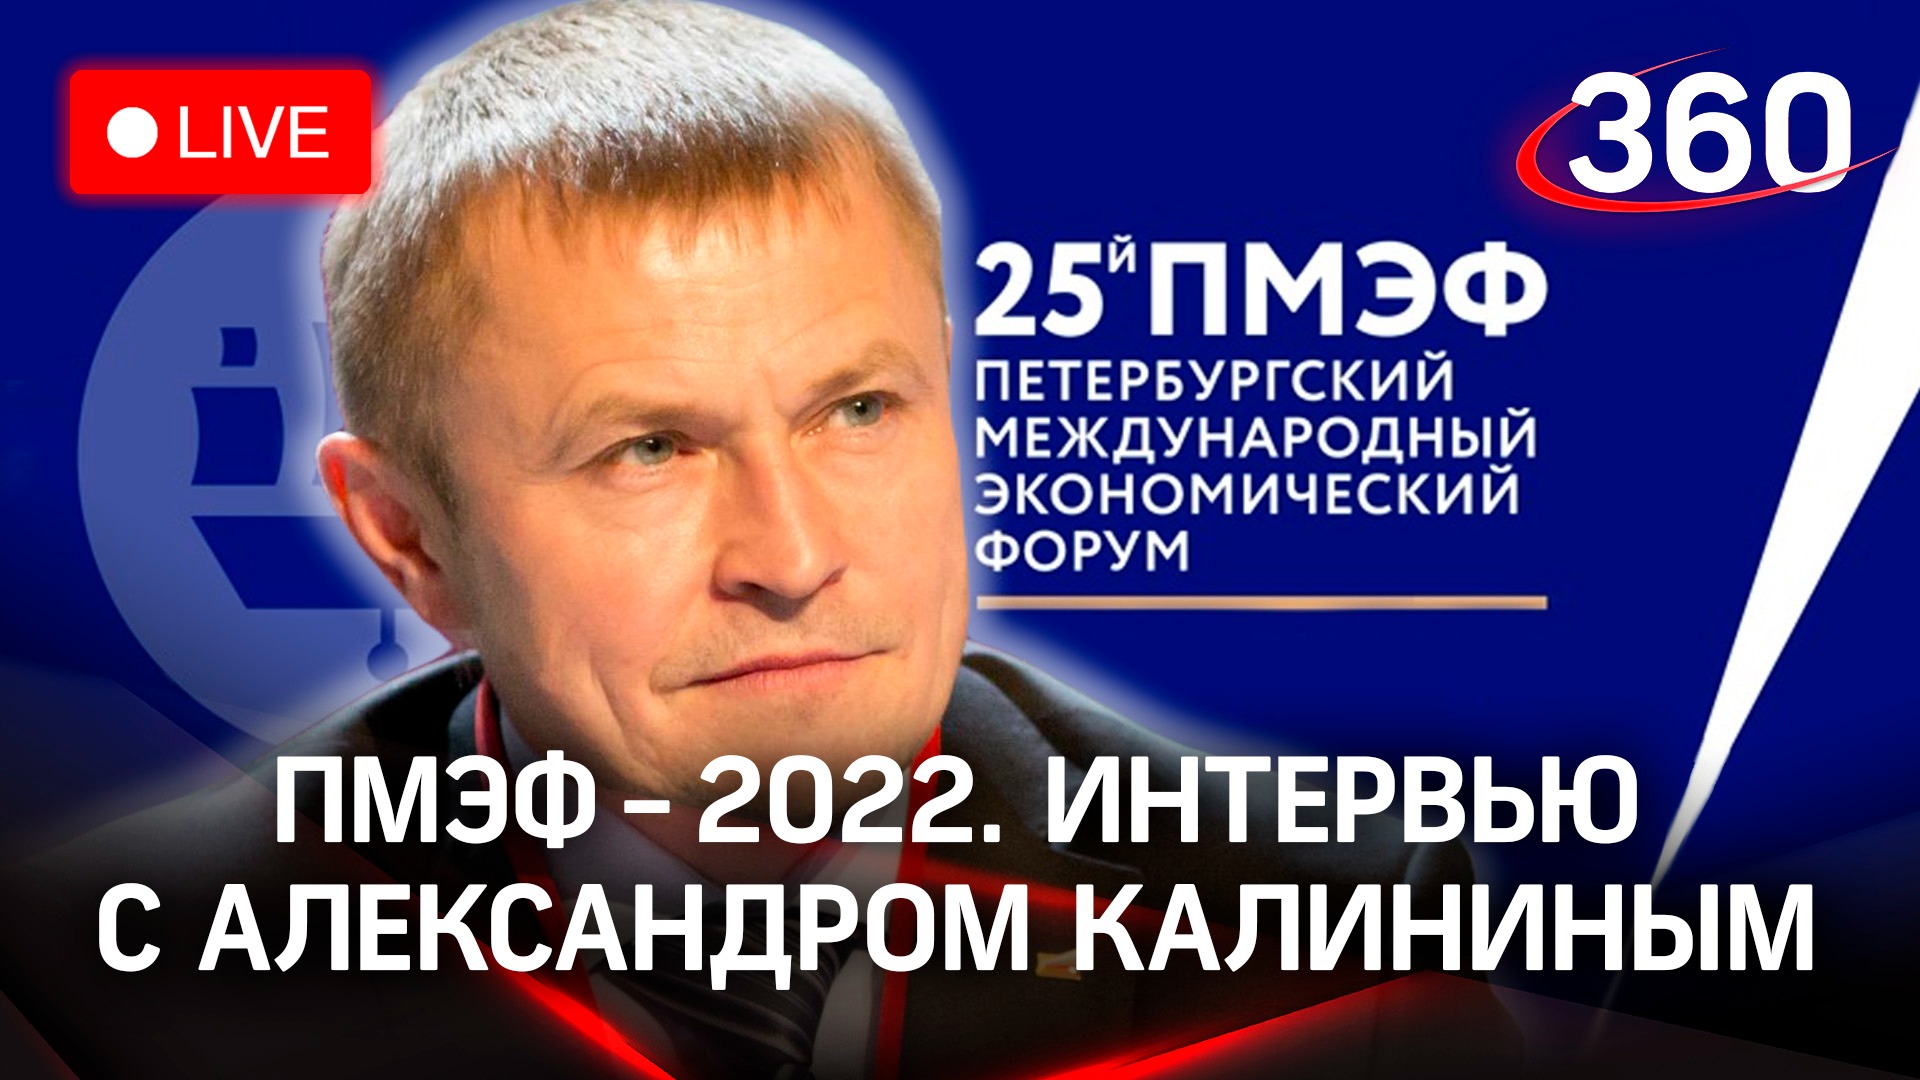 ПМЭФ-2022: интервью с Александром Калининым, президентом «Опора России»